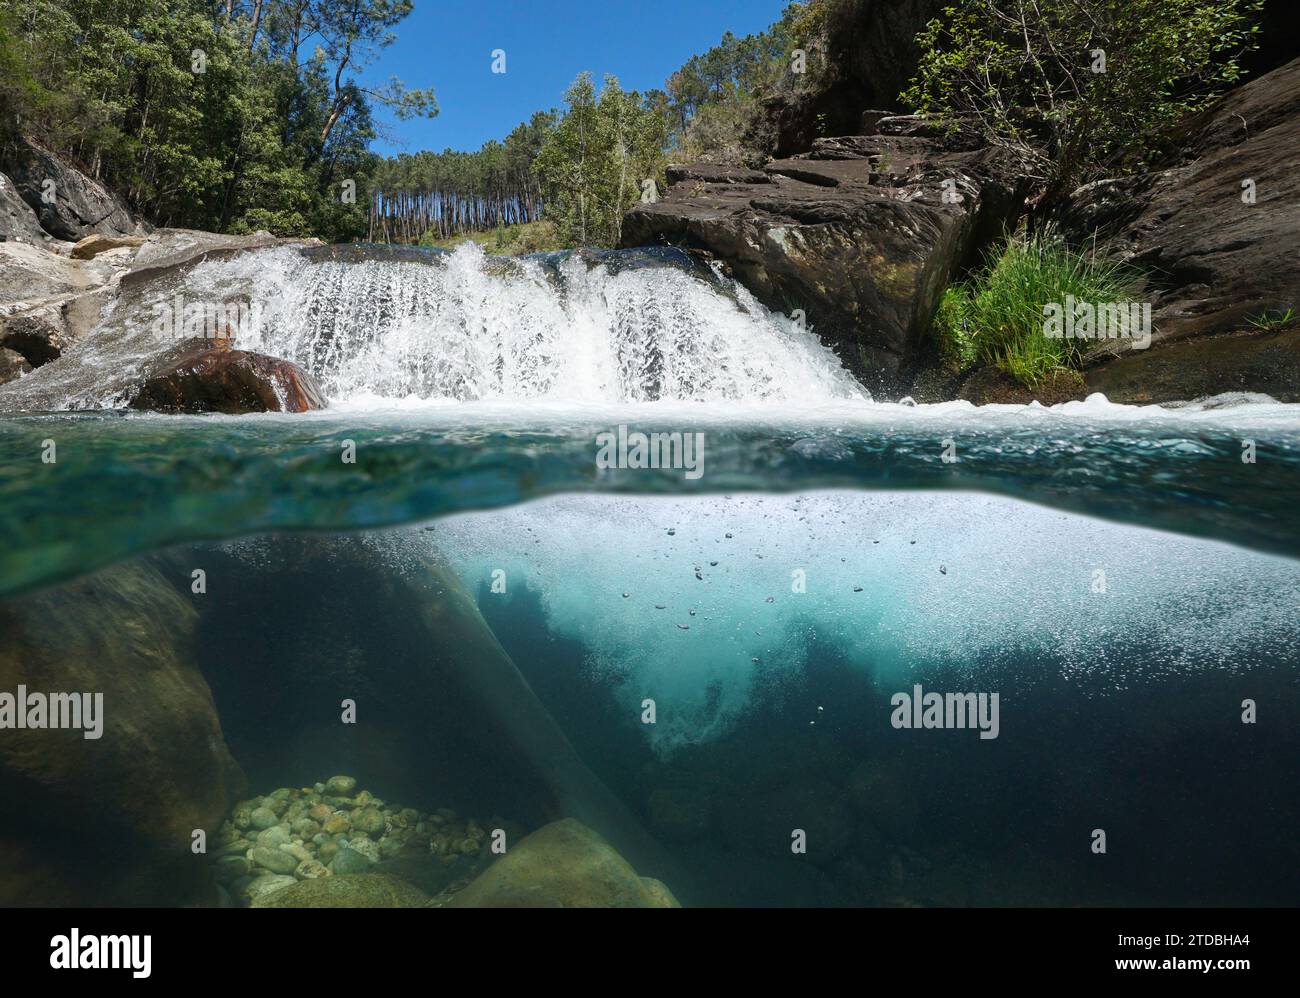 Cascade sur un ruisseau sauvage, vue sur deux niveaux au-dessus et sous la surface de l'eau, scène naturelle, Espagne, Galice, province de Pontevedra Banque D'Images